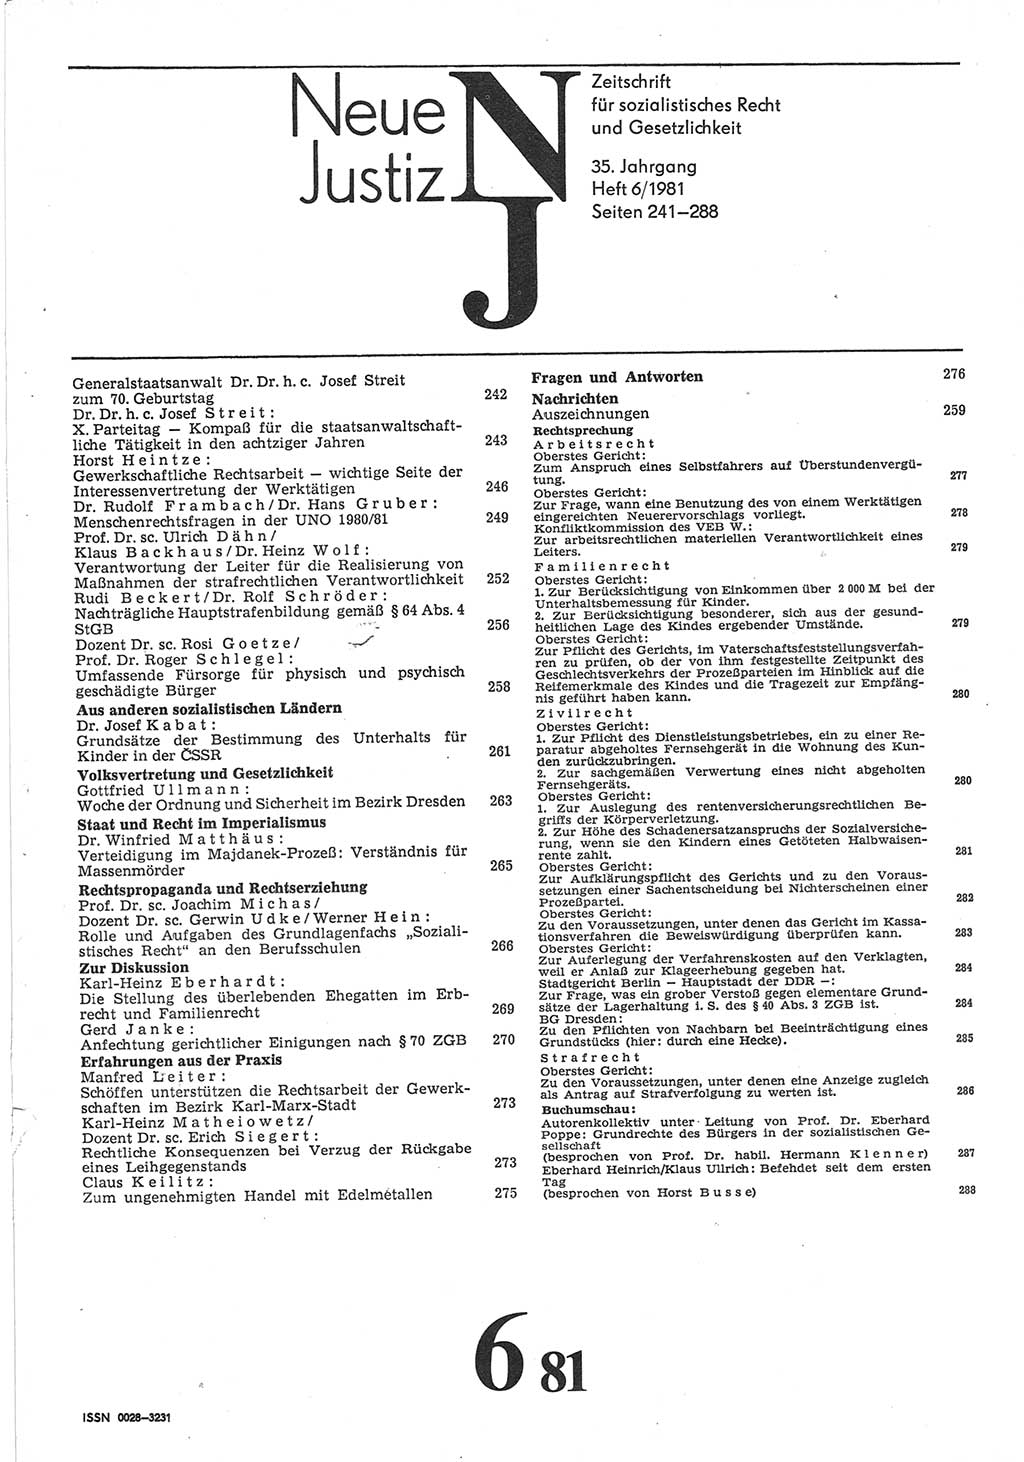 Neue Justiz (NJ), Zeitschrift für sozialistisches Recht und Gesetzlichkeit [Deutsche Demokratische Republik (DDR)], 35. Jahrgang 1981, Seite 241 (NJ DDR 1981, S. 241)